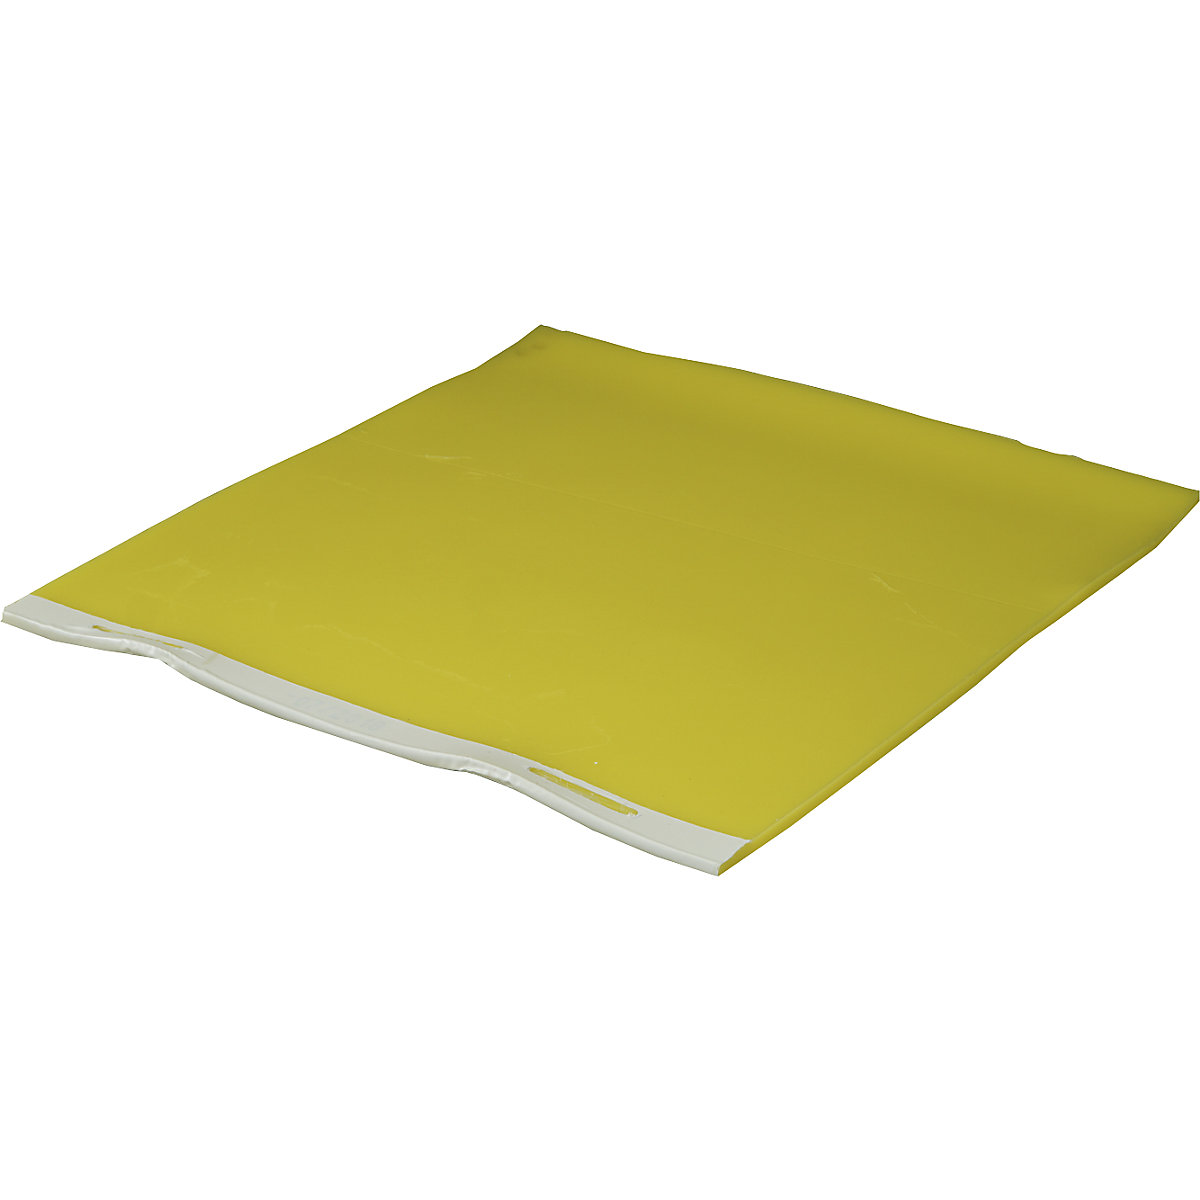 Sealing mat, mat thickness 13 mm